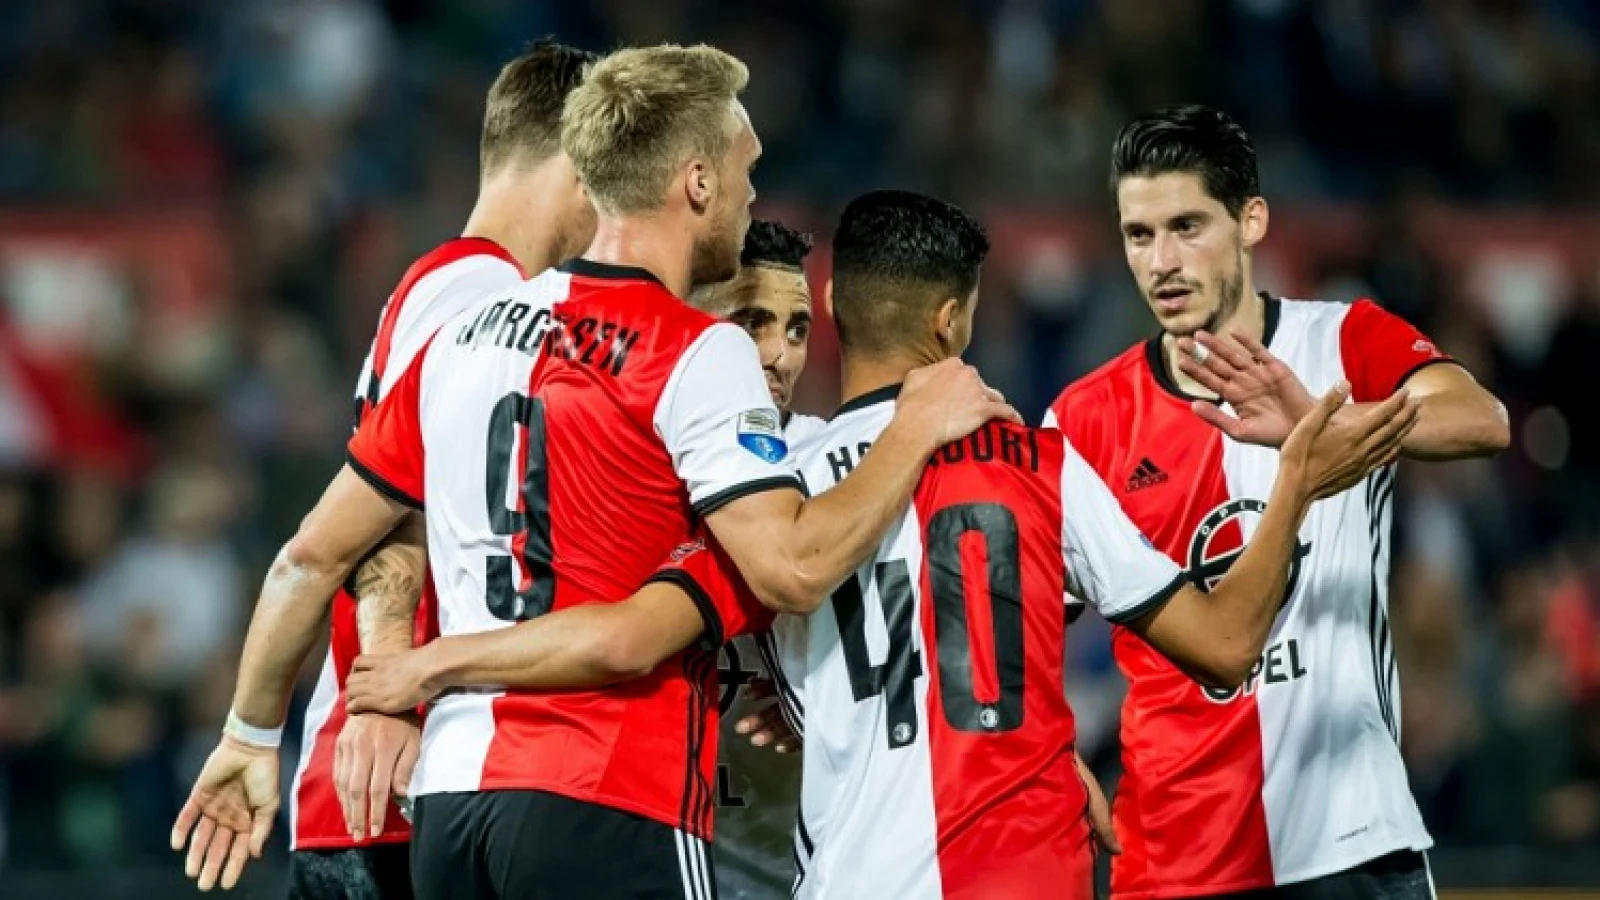 Feyenoord loot Excelsior in de volgende ronde van de KNVB beker